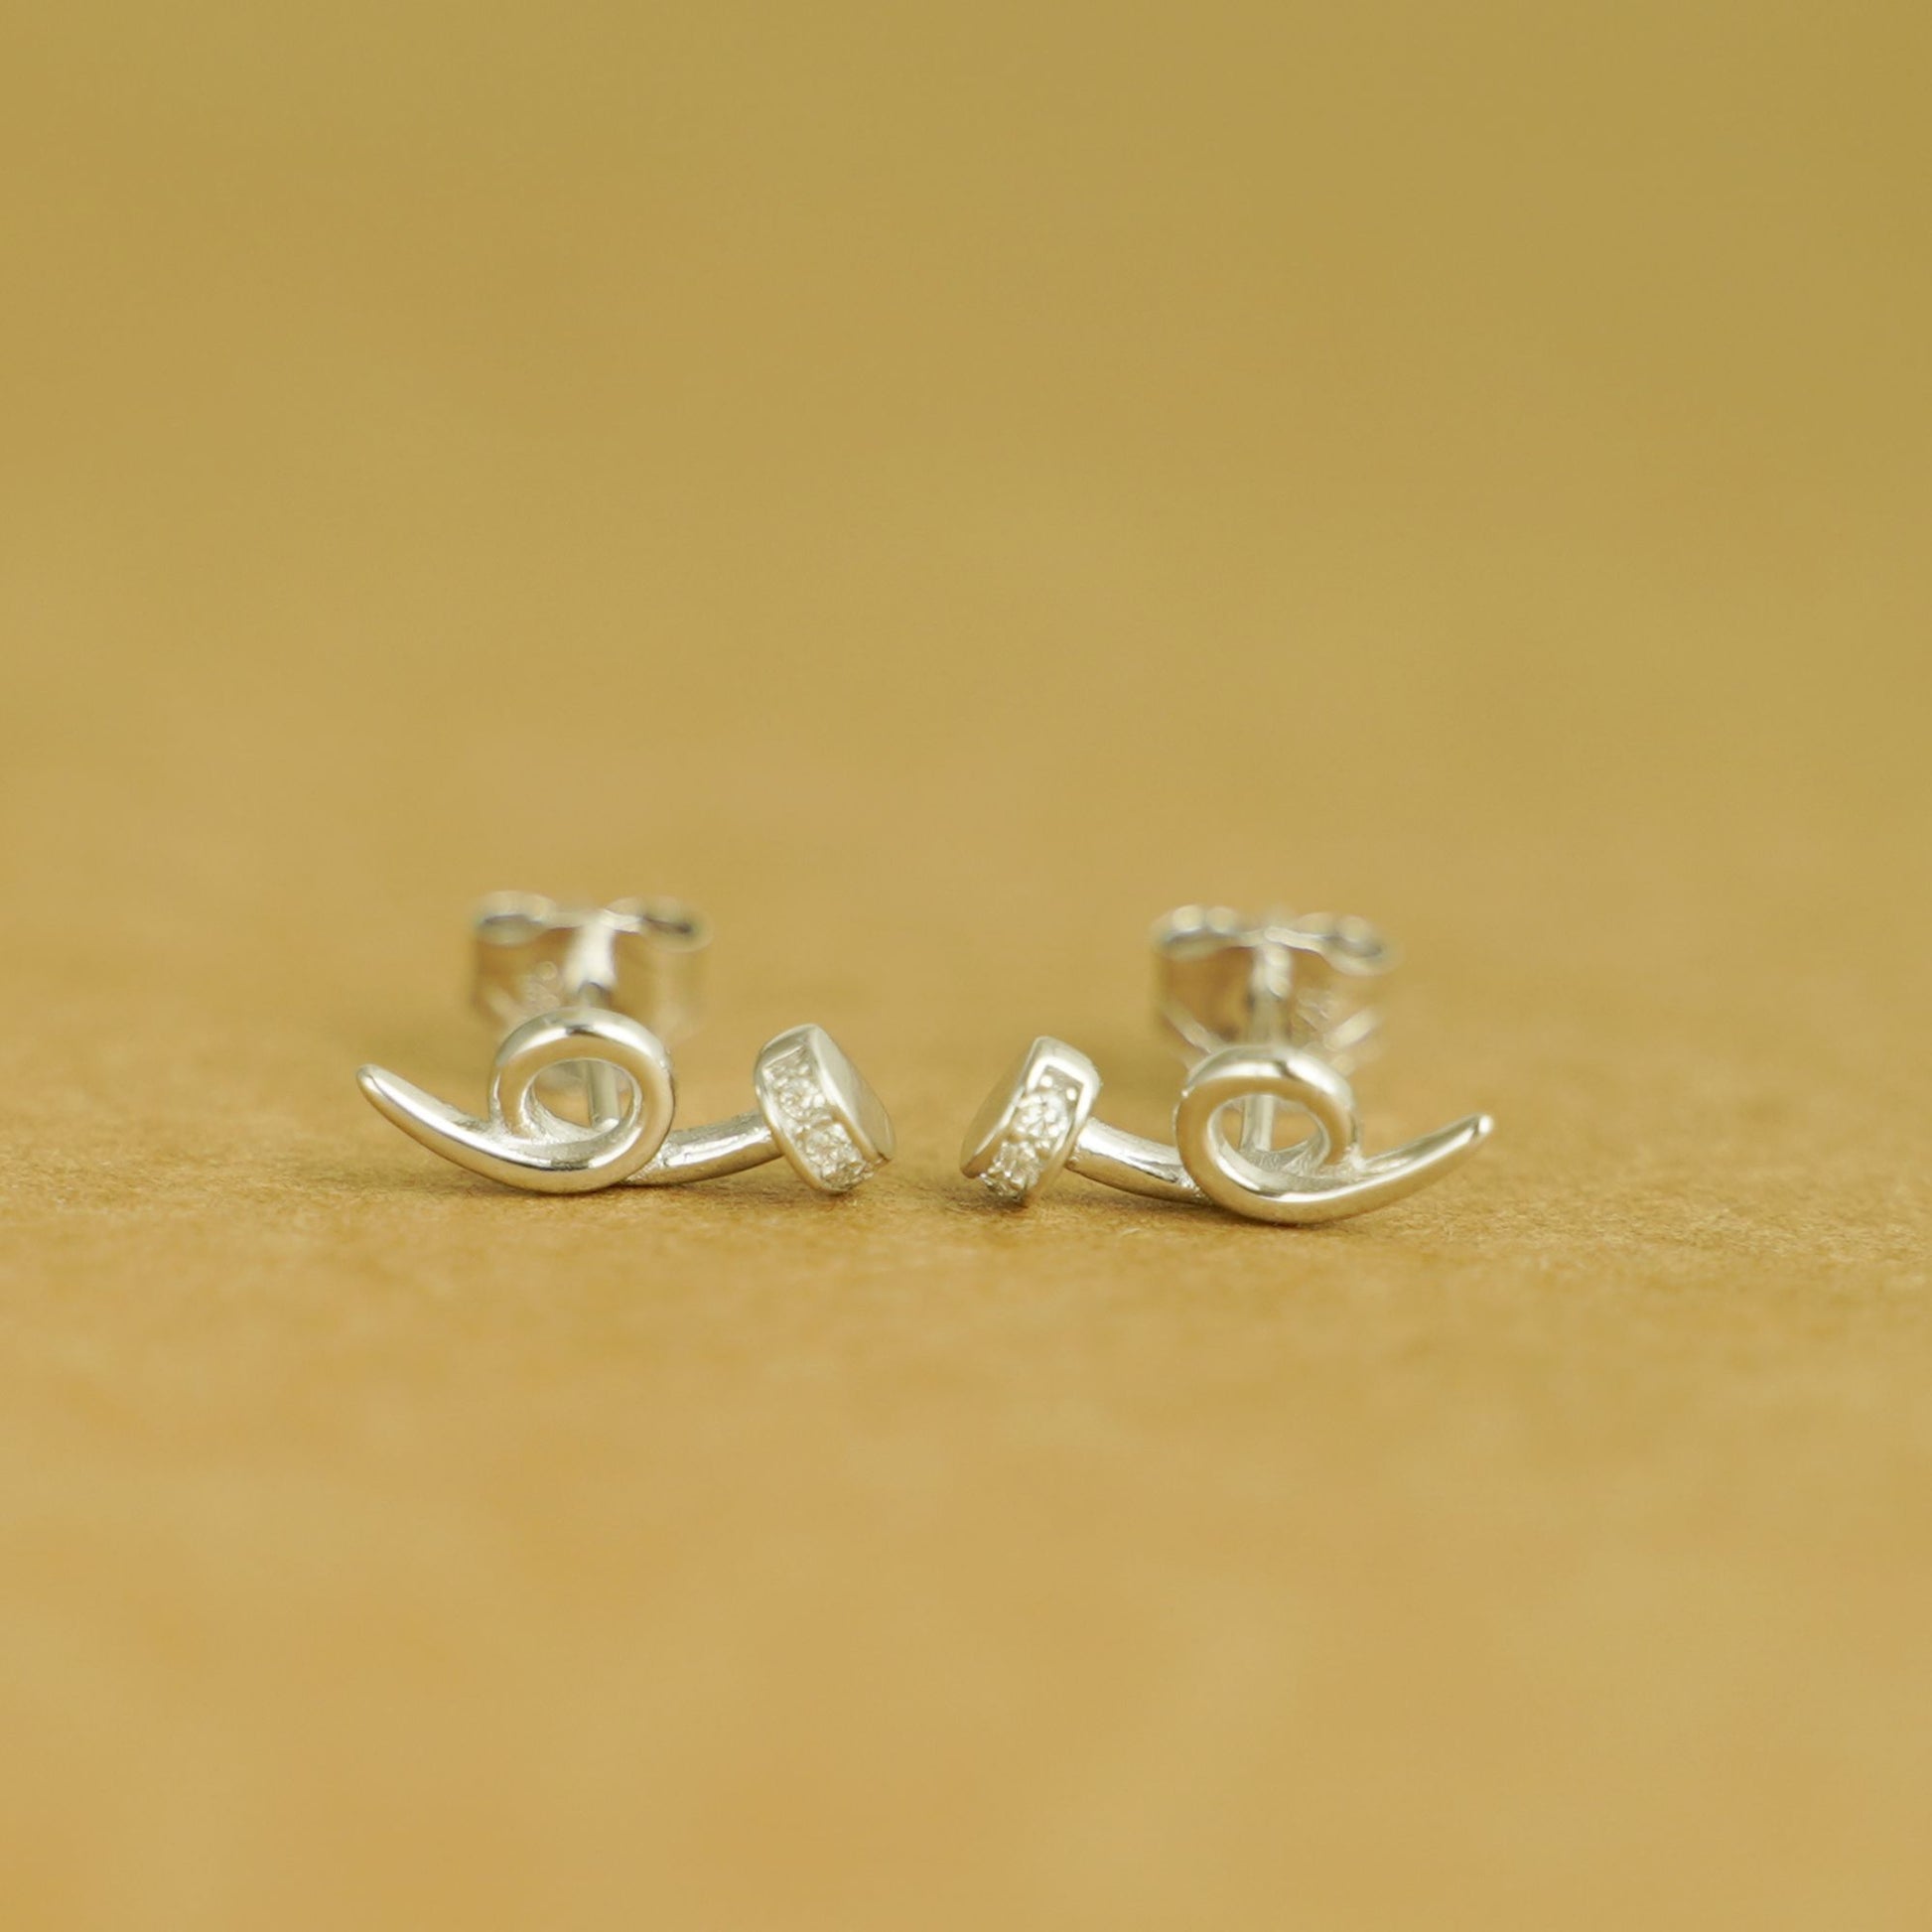 Sterling Silver Twisted Nail Spiral Pin CZ Stud Earrings - Minimalist Dainty Ear Piercing Jewelry - sugarkittenlondon